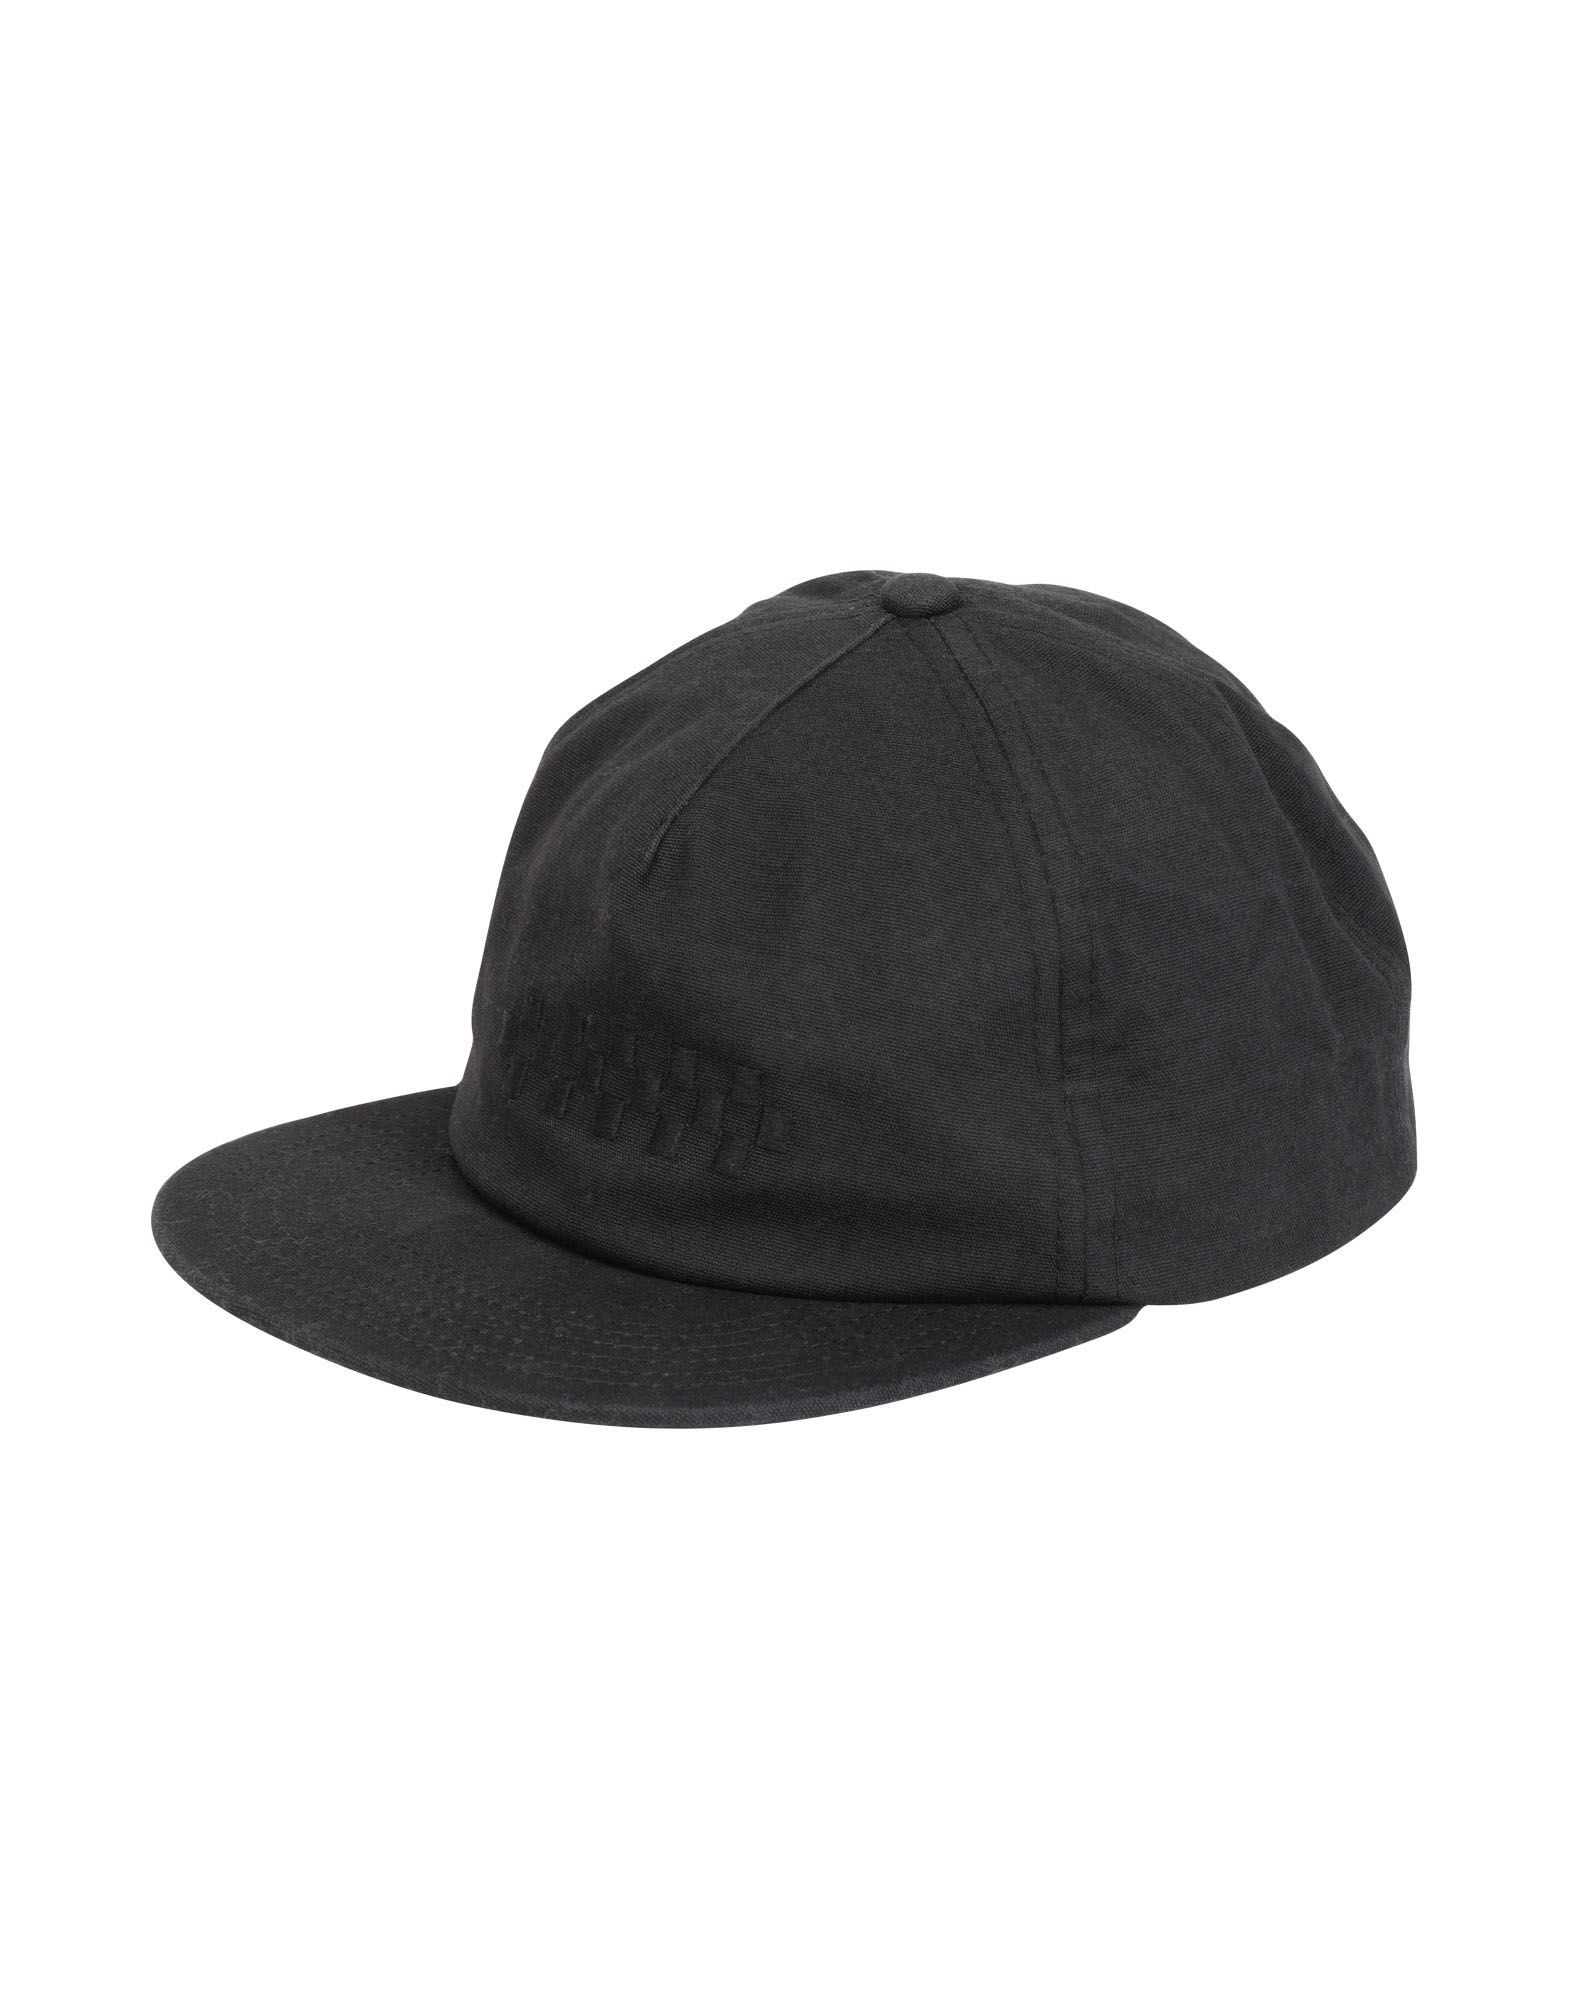 《送料無料》VANS レディース 帽子 ブラック one size コットン 100% WM OVERTIME HAT BLEACHED APR